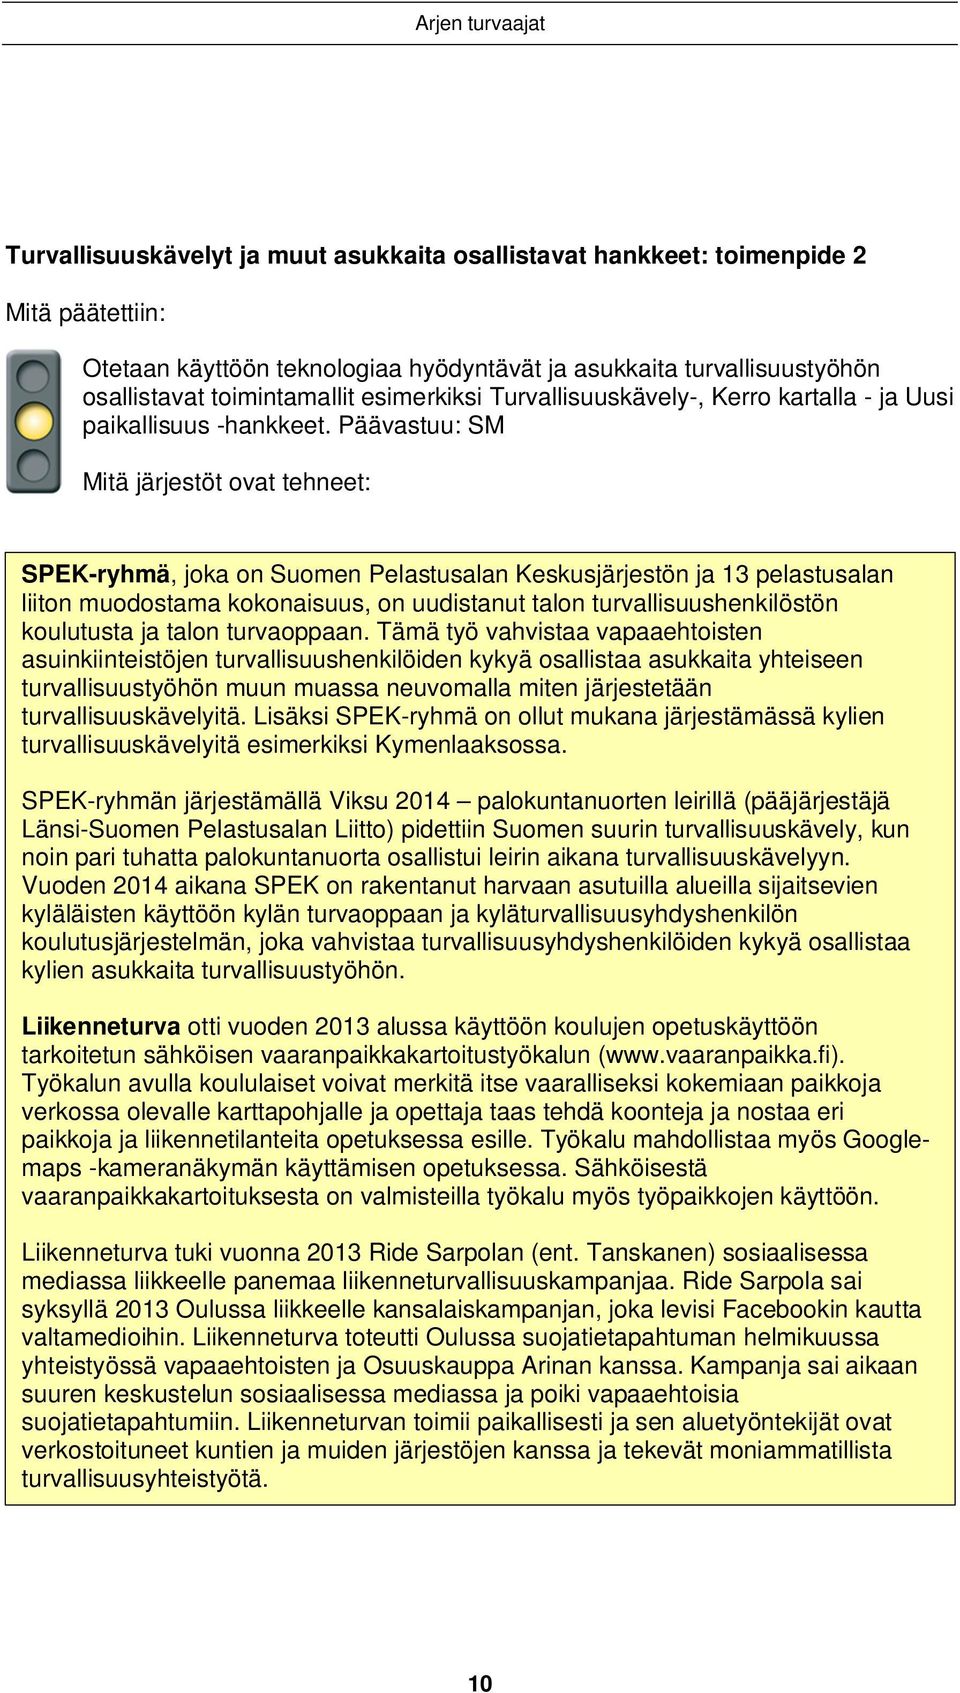 Päävastuu: SM Mitä järjestöt ovat tehneet: SPEK-ryhmä, joka on Suomen Pelastusalan Keskusjärjestön ja 13 pelastusalan liiton muodostama kokonaisuus, on uudistanut talon turvallisuushenkilöstön